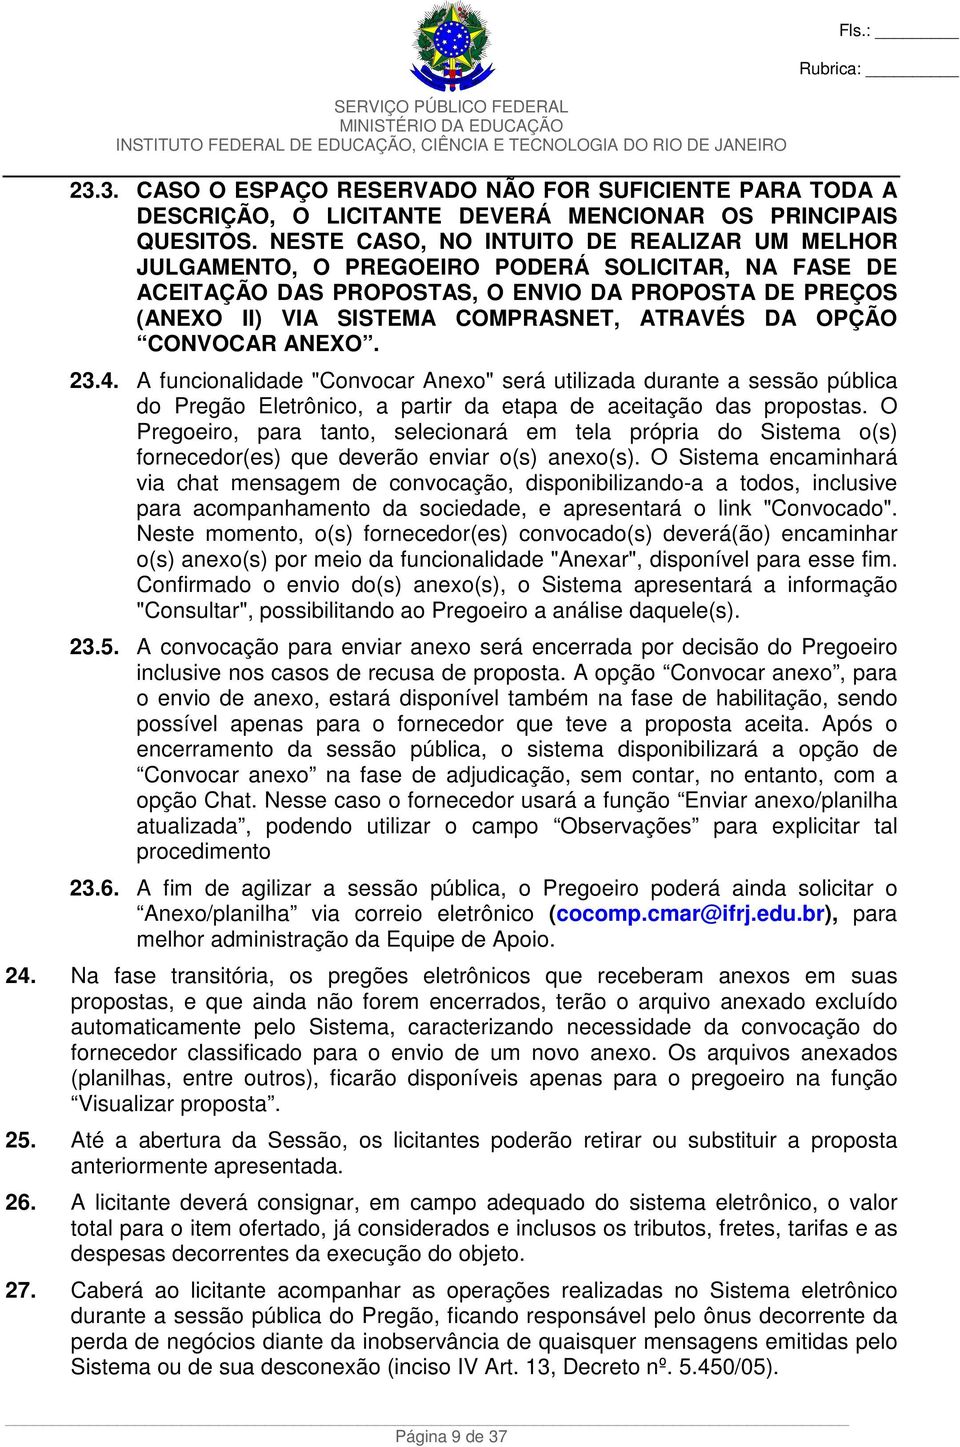 OPÇÃO CONVOCAR ANEXO. 23.4. A funcionalidade "Convocar Anexo" será utilizada durante a sessão pública do Pregão Eletrônico, a partir da etapa de aceitação das propostas.